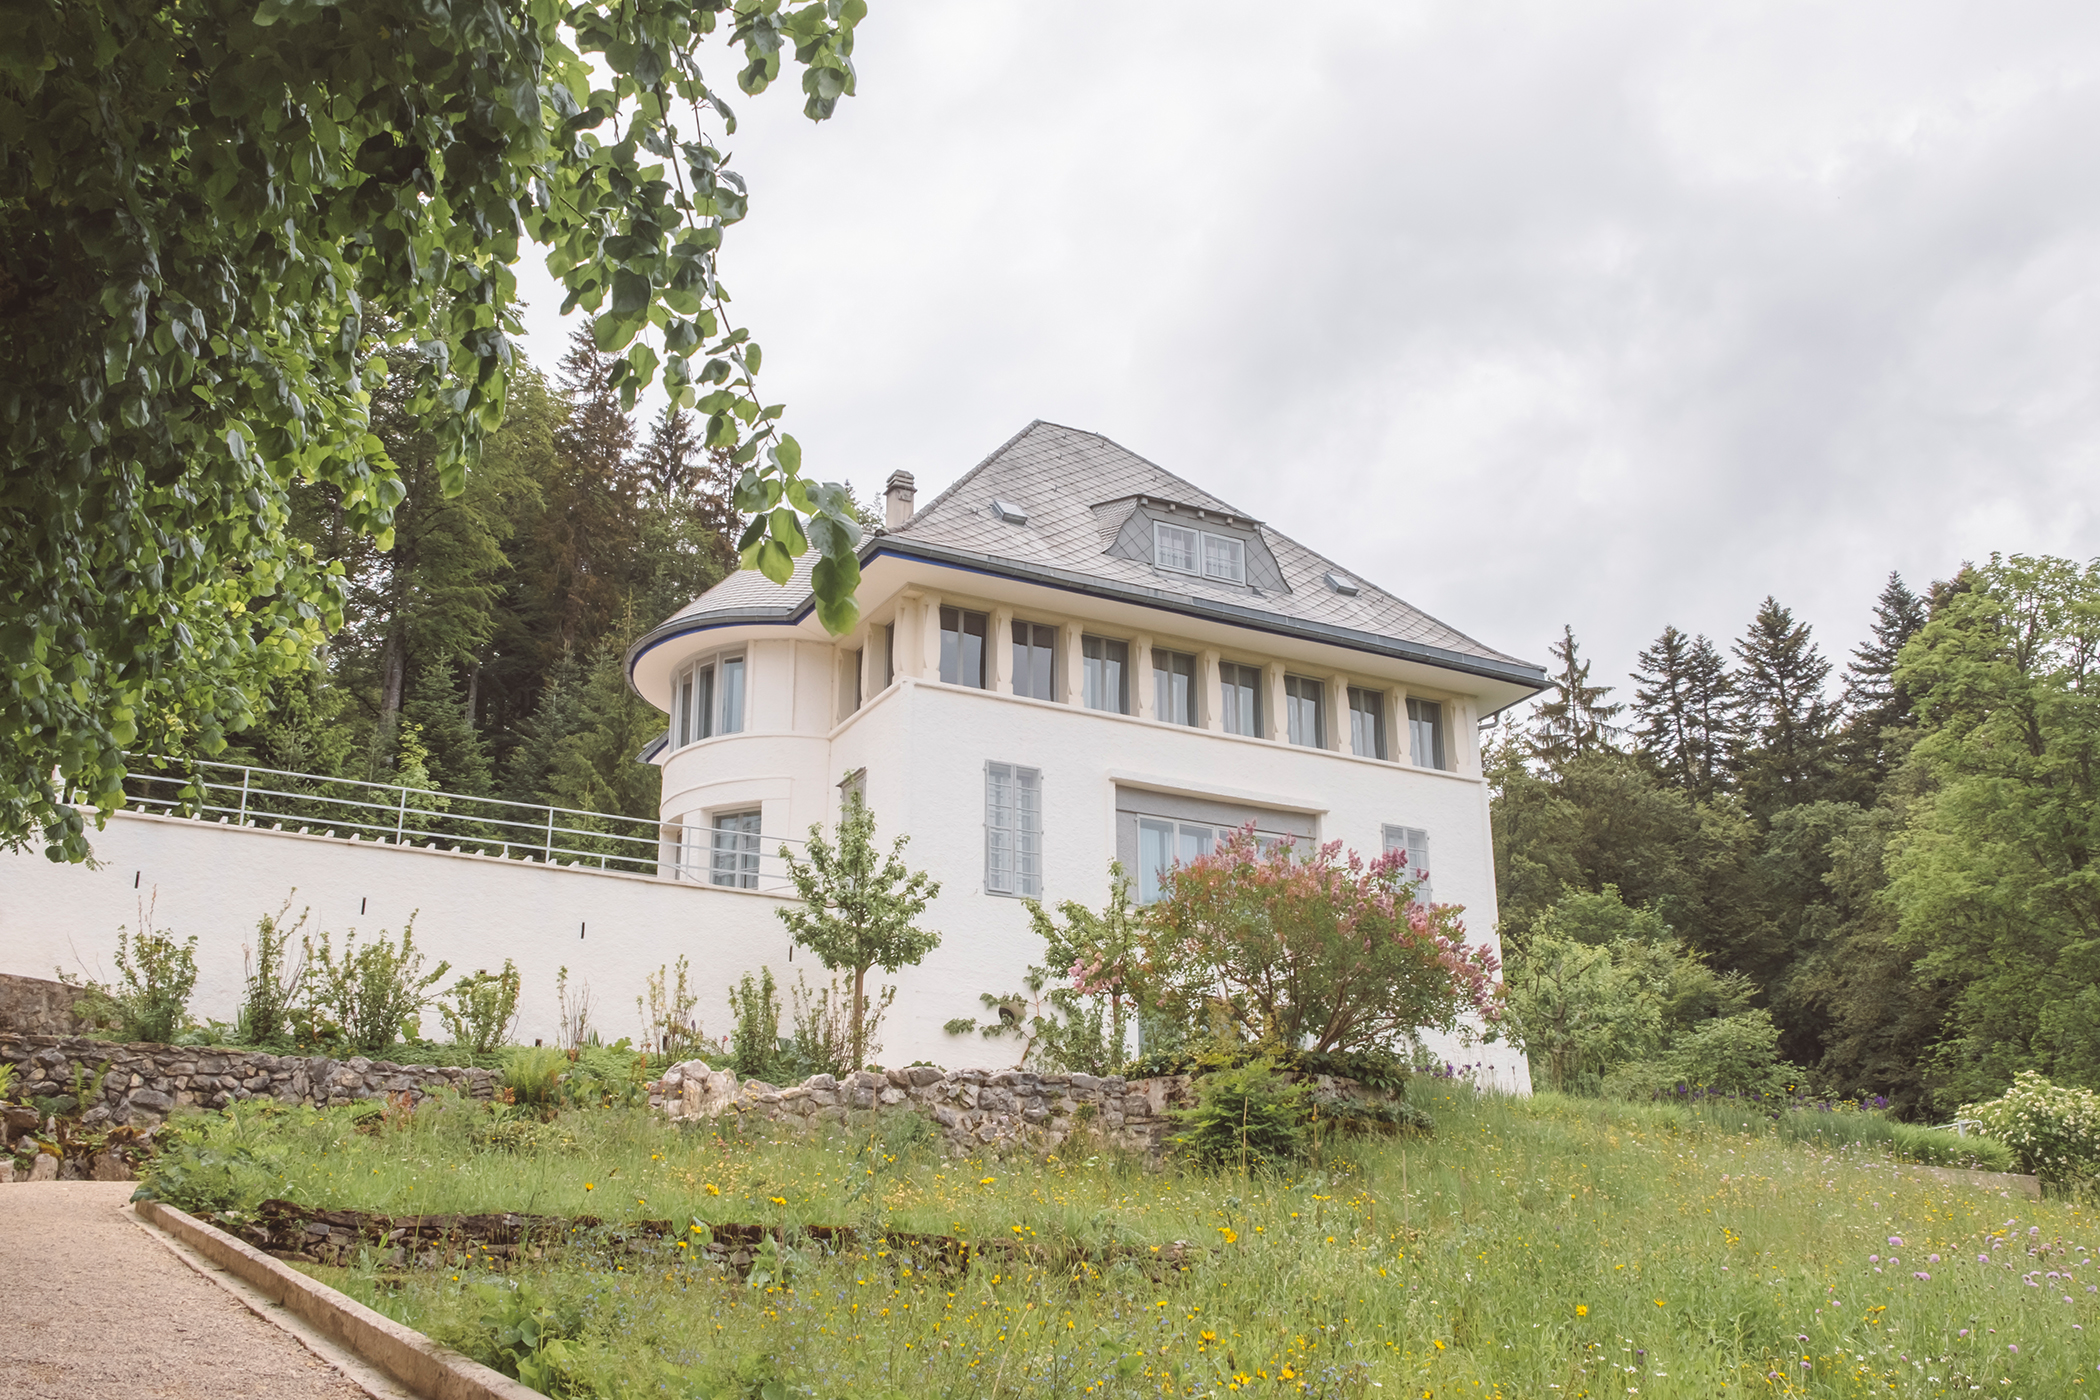 La Maison Blanche de l'architecte Suisse Le Corbusier